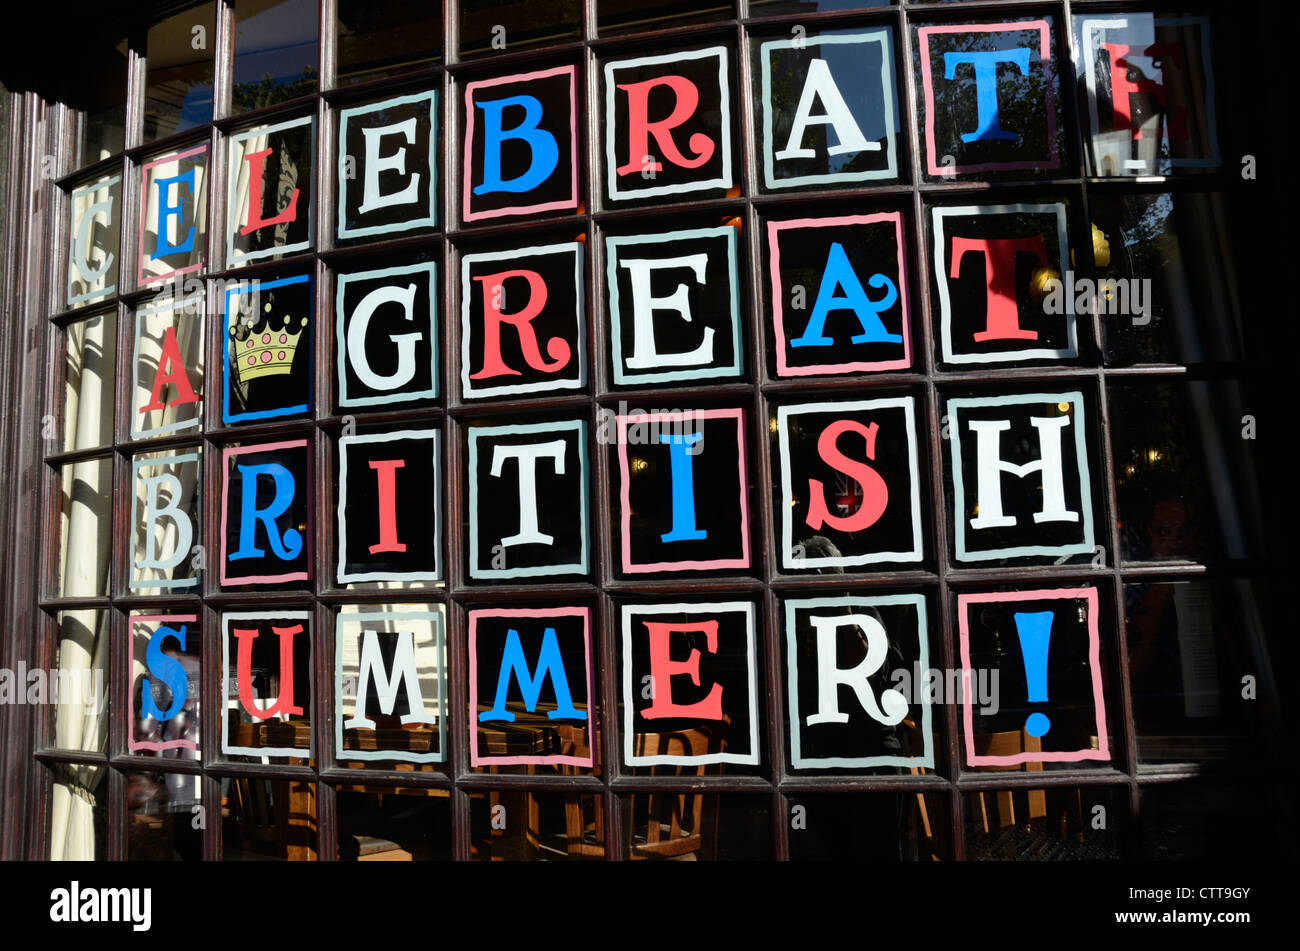 "Einen schönen britischen Sommer feiern" geschrieben in einem Pub Fenster, London, UK Stockfoto